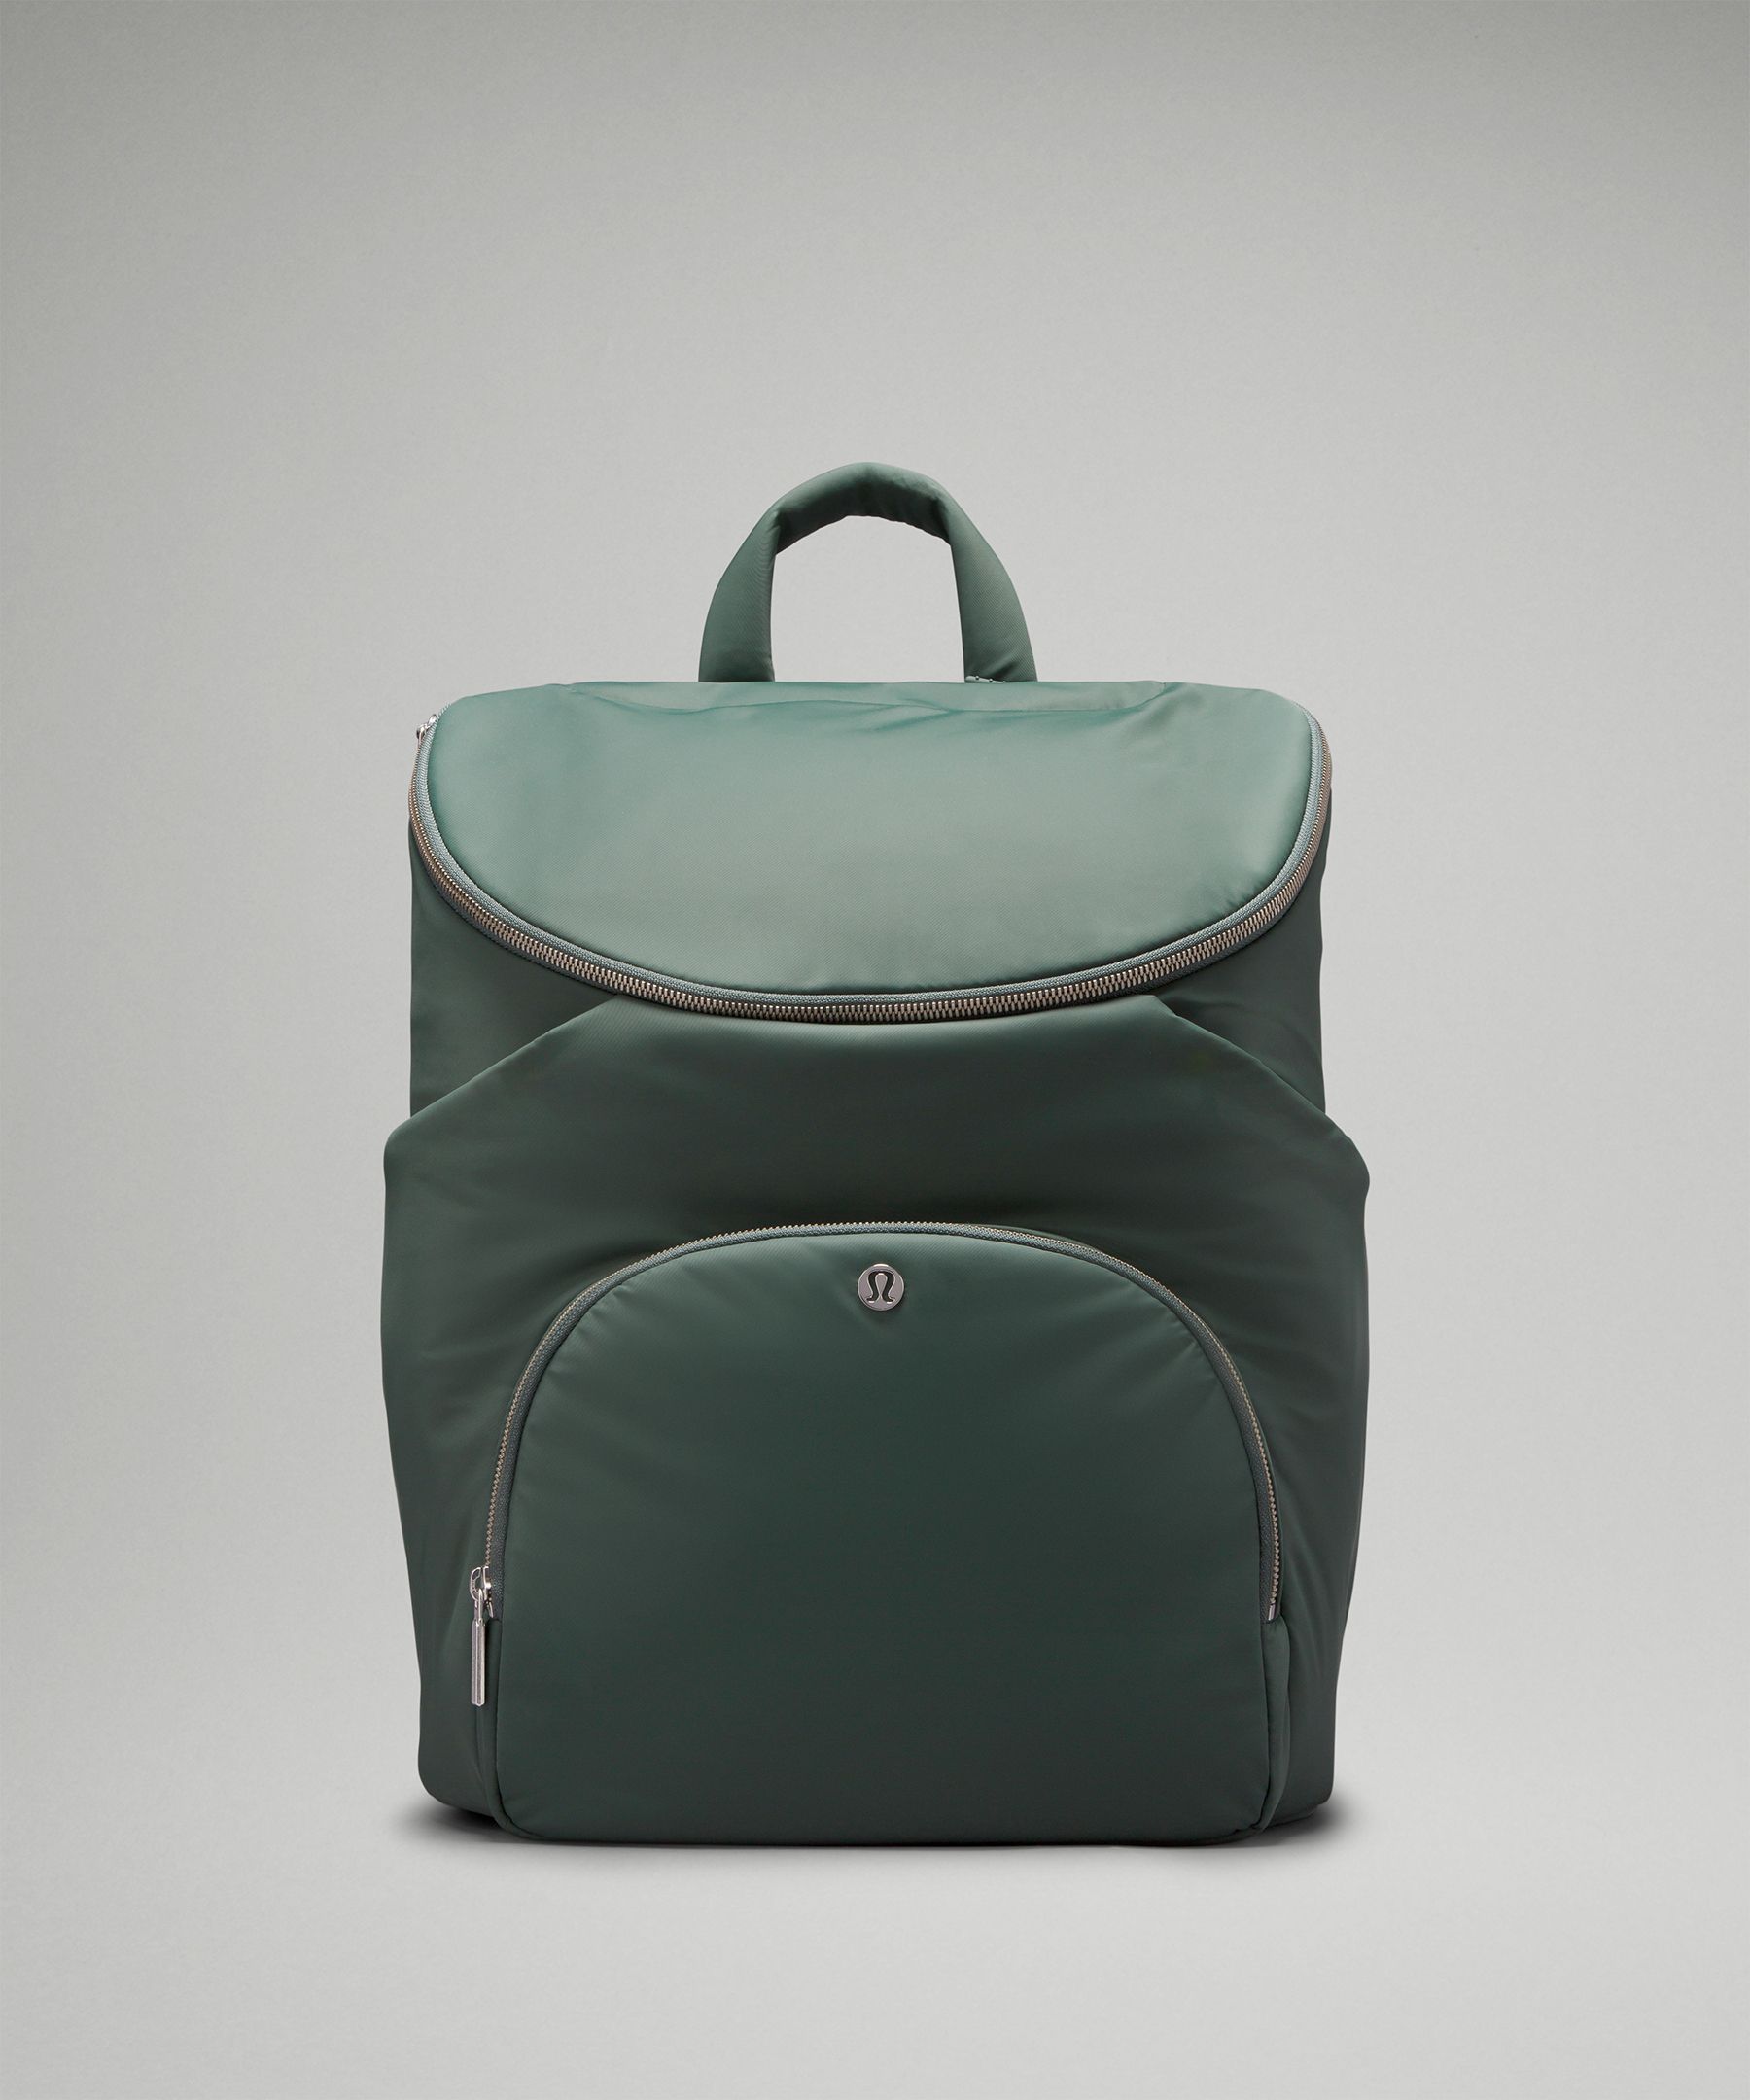 Lululemon New Parent Backpack 17L